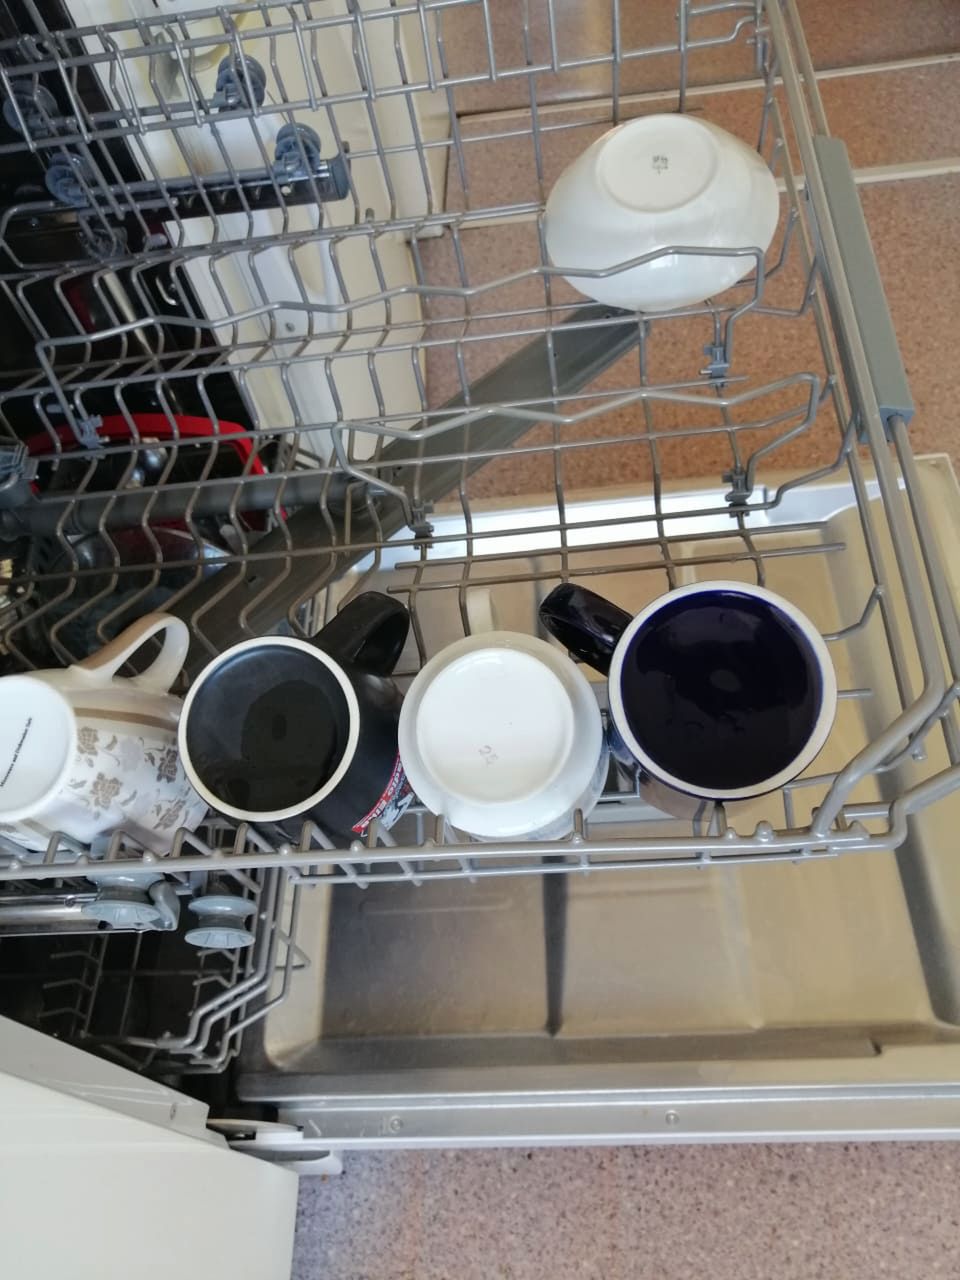 Mokre naczynia po myciu w zmywarce Fot. Genialne.pl